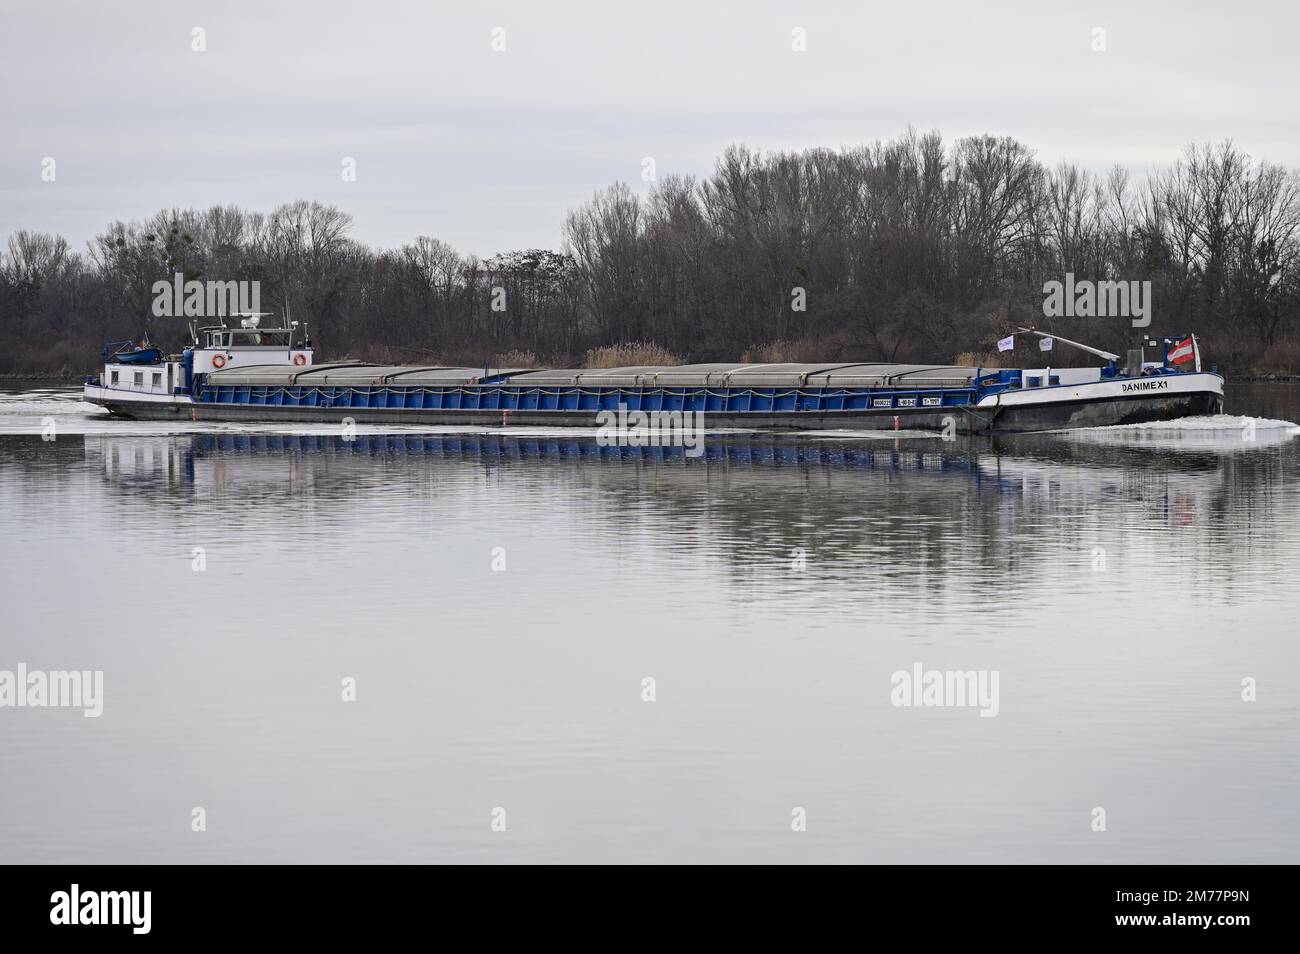 Vienne, Autriche. Cargo Danimex X1 sur le Danube en hiver Banque D'Images